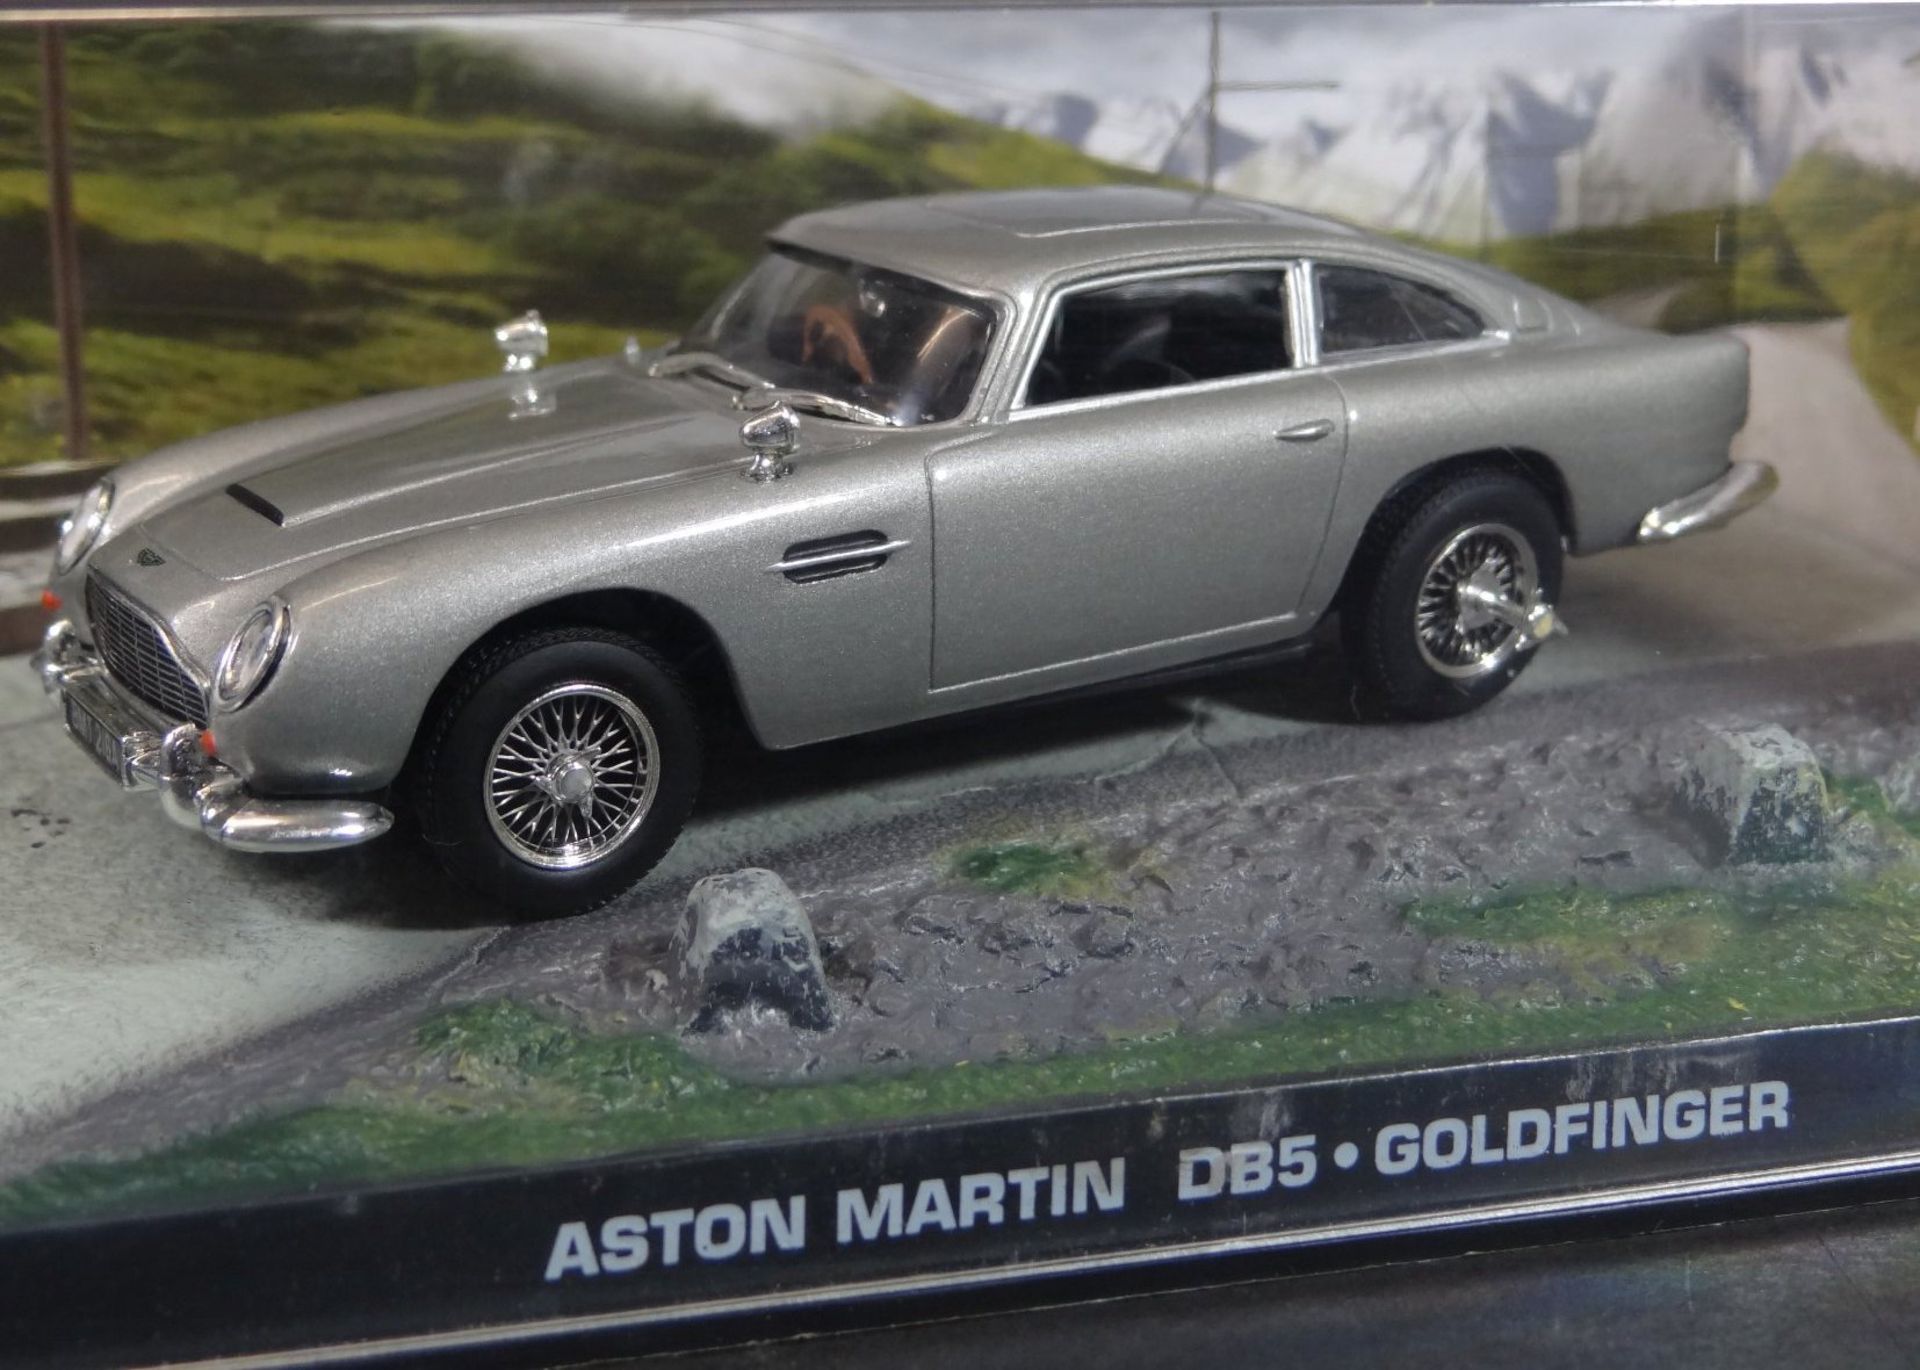 Goldfinger Modellauto "Aston Martin" Neuwertig in Display - Bild 5 aus 5